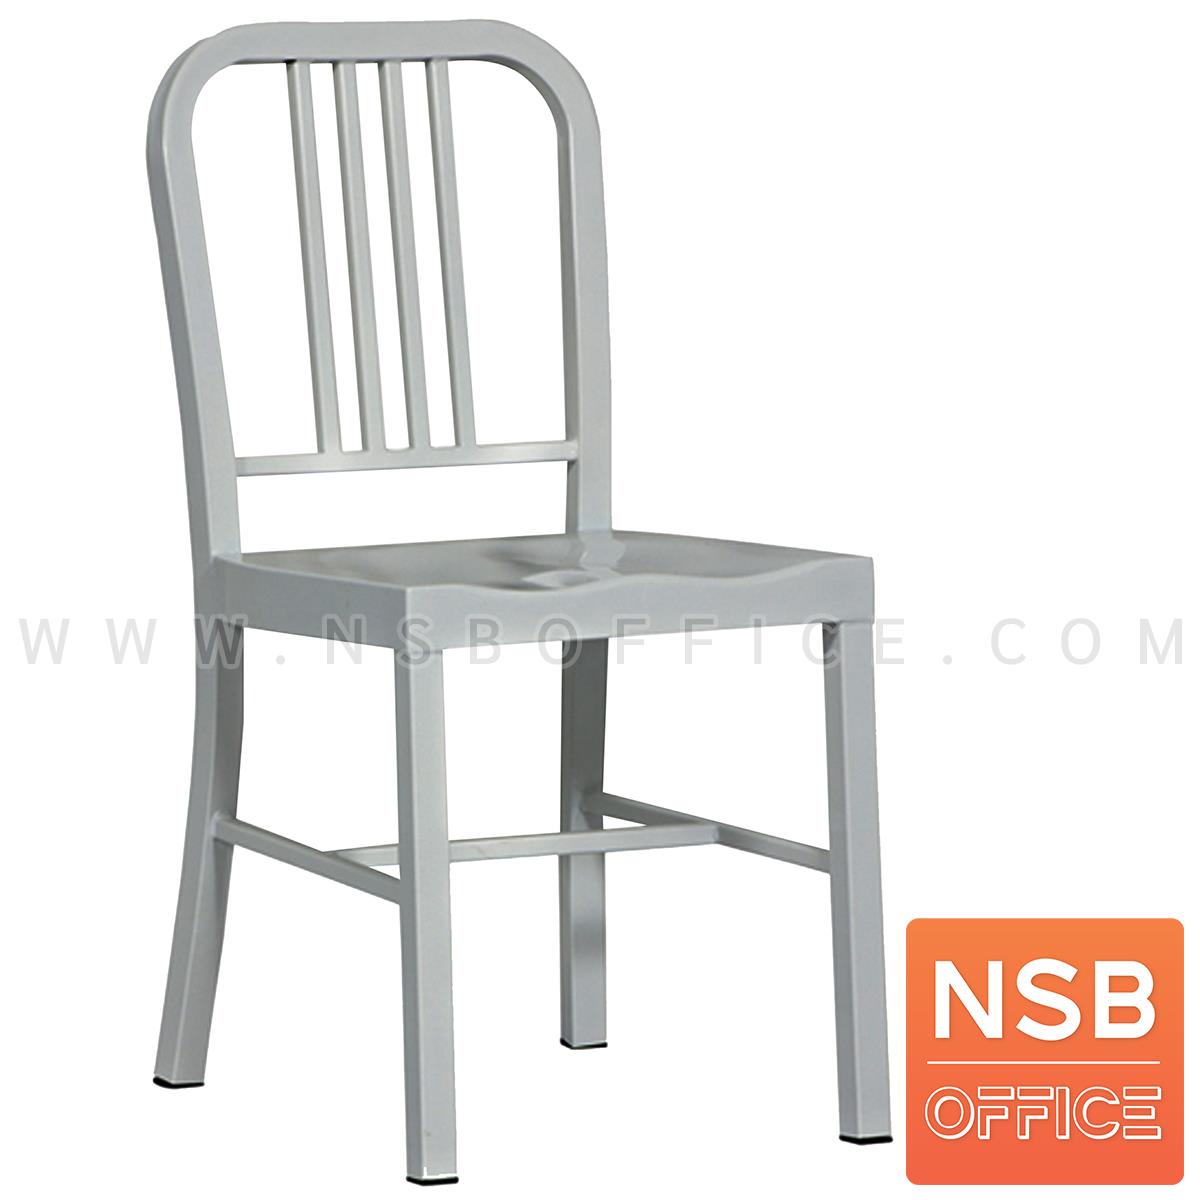 B20A051:เก้าอี้โมเดิร์นเหล็ก รุ่น Retro-S03 ขนาด 45W cm. โครงขาเหล็ก สีบรอนซ์ 